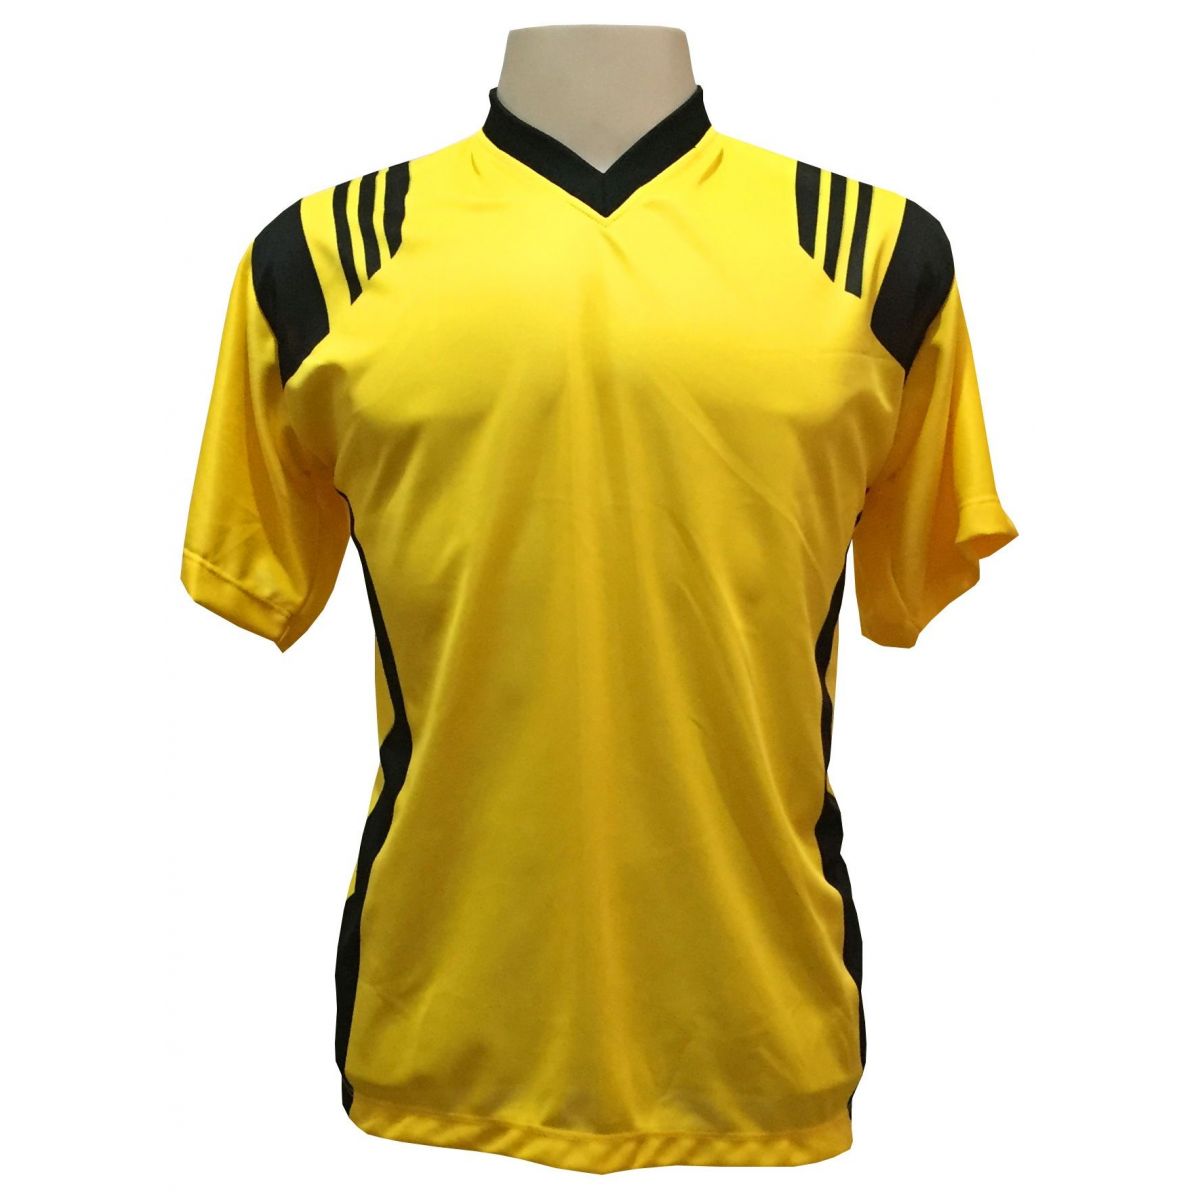 Uniforme Esportivo com 20 camisas modelo Roma Amarelo/Preto + 20 calções modelo Copa + 1 Goleiro + Brindes